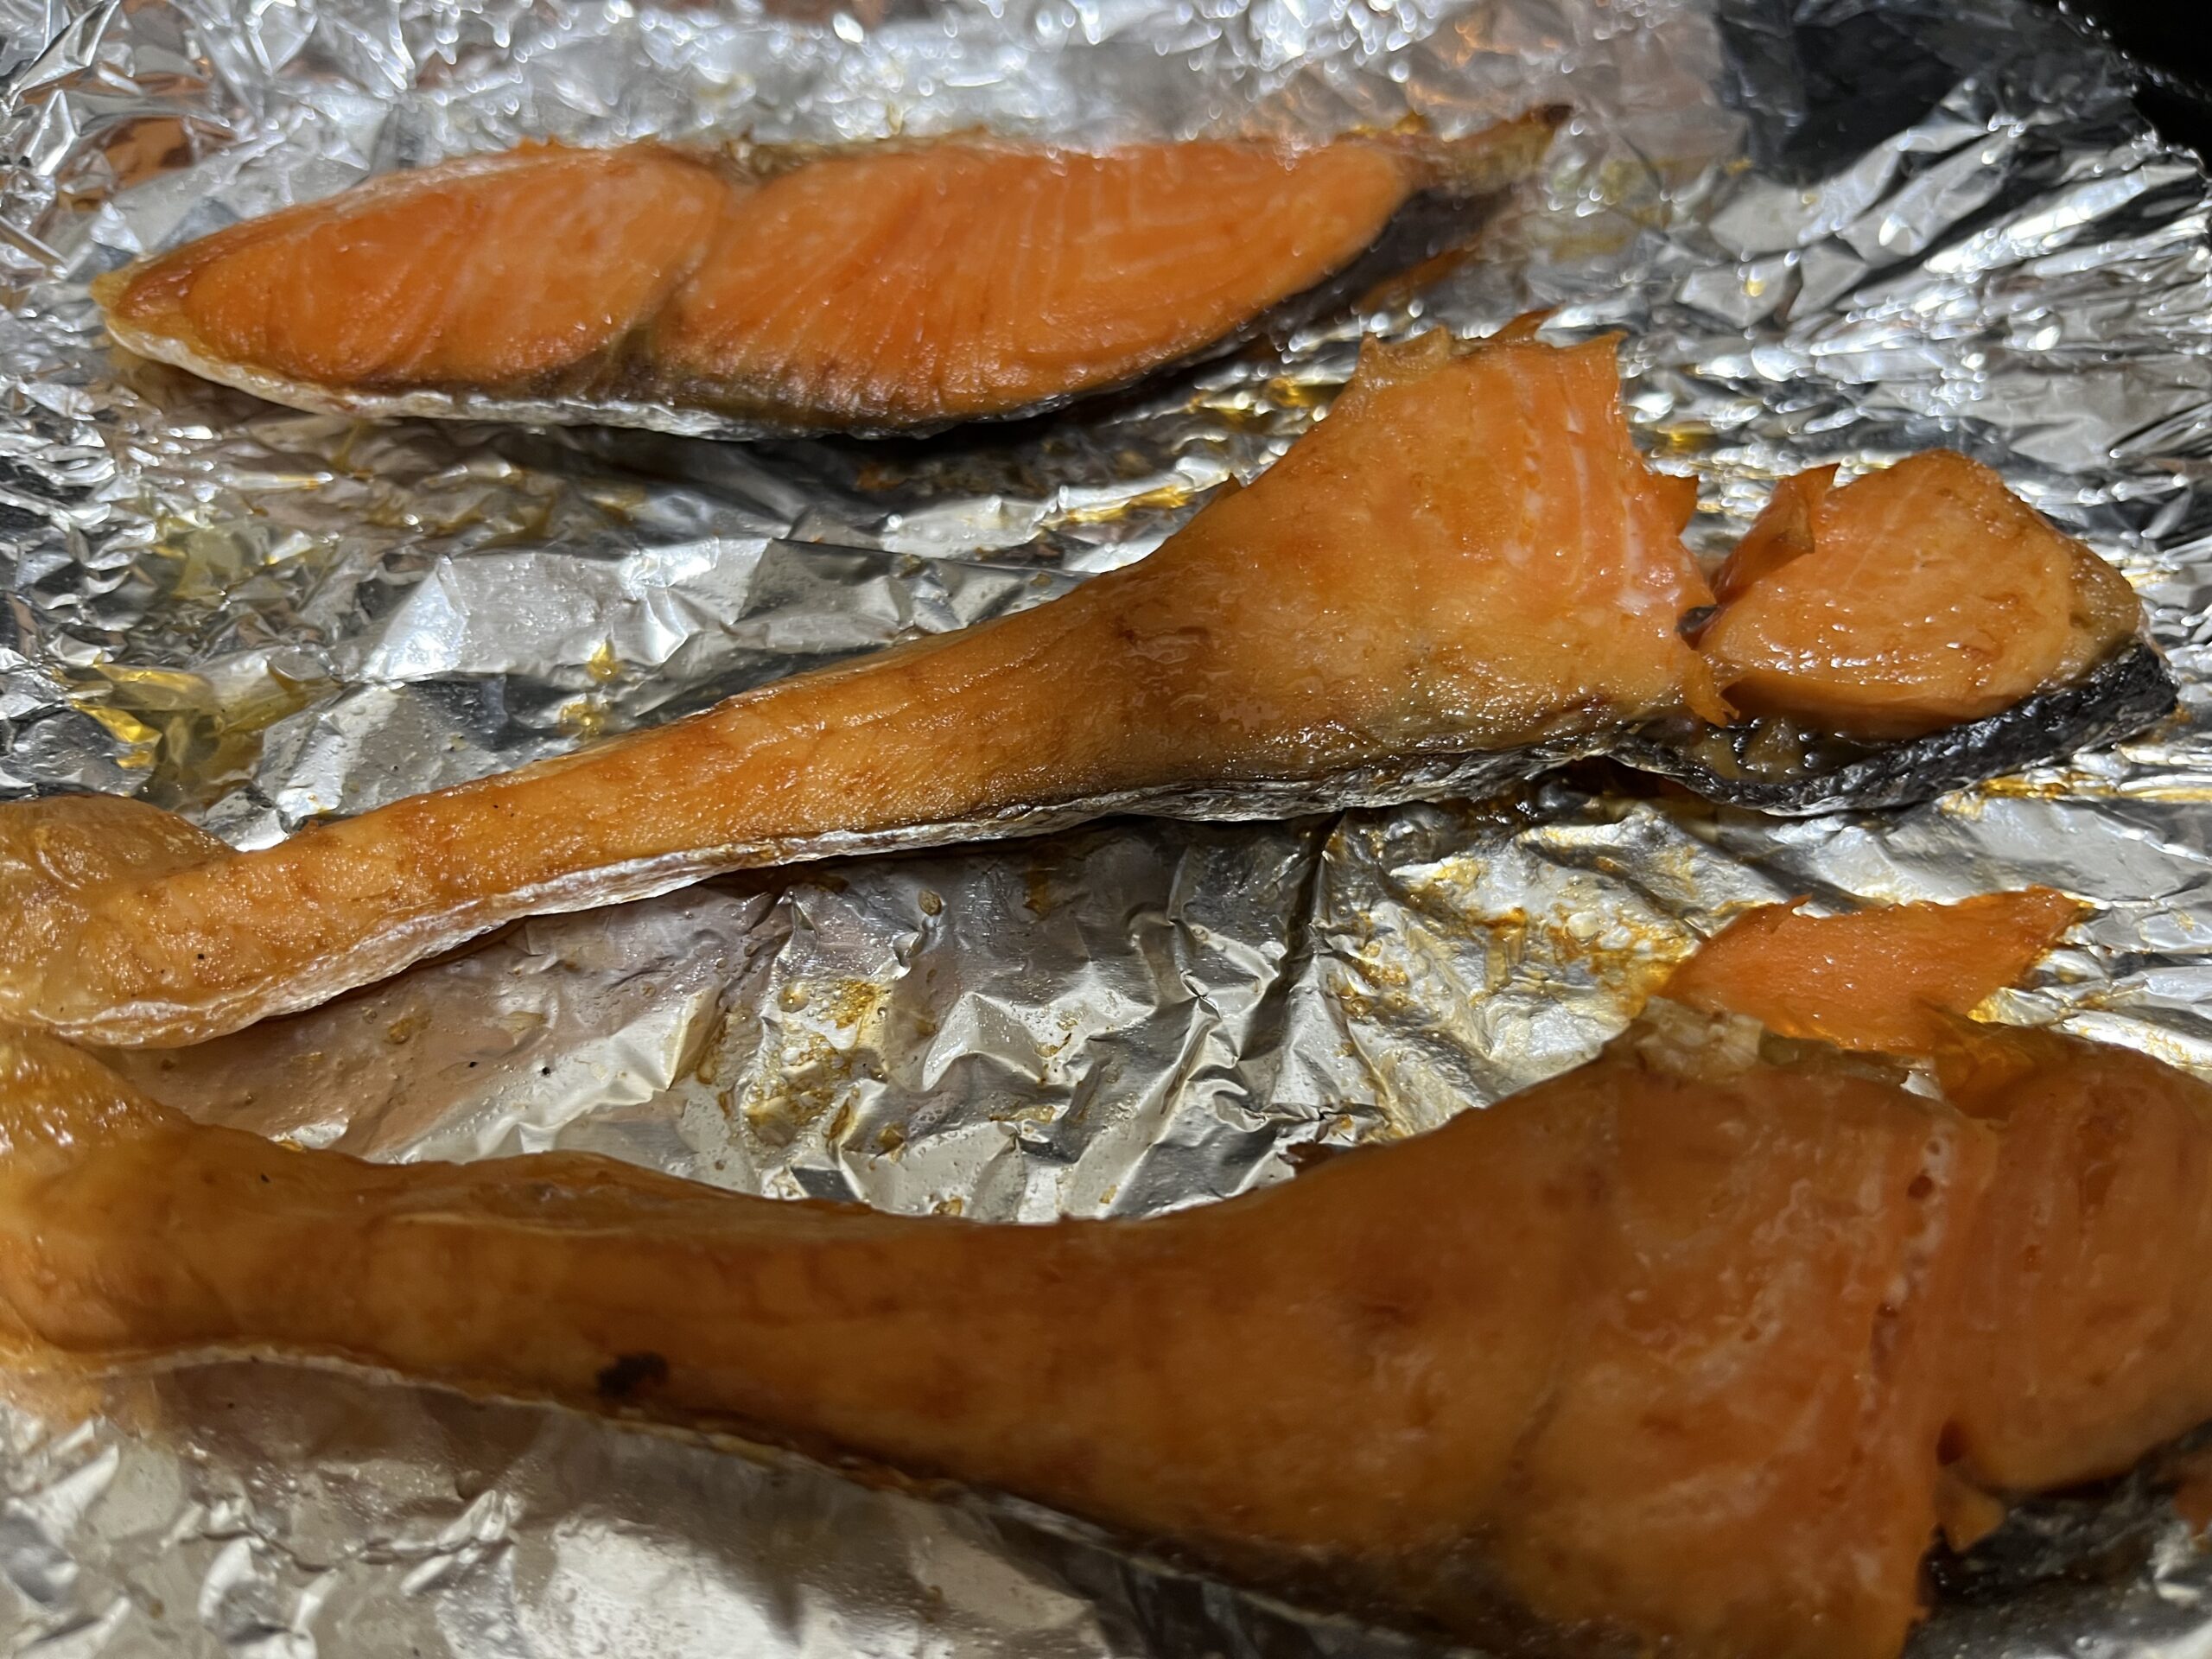 オーブントースターで表裏を焼いた鮭の様子を撮影した写真